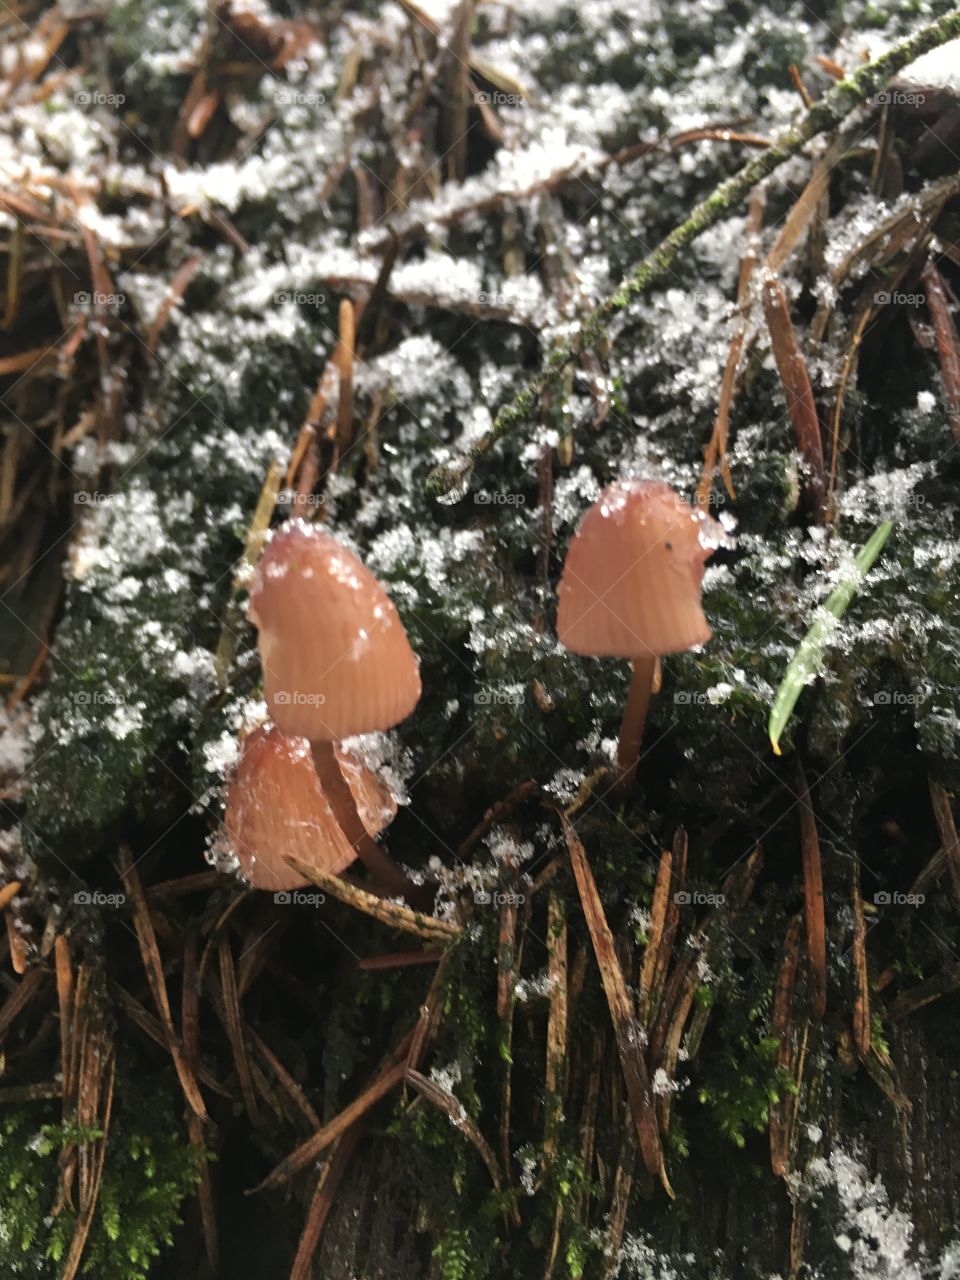 Winter mushroom 